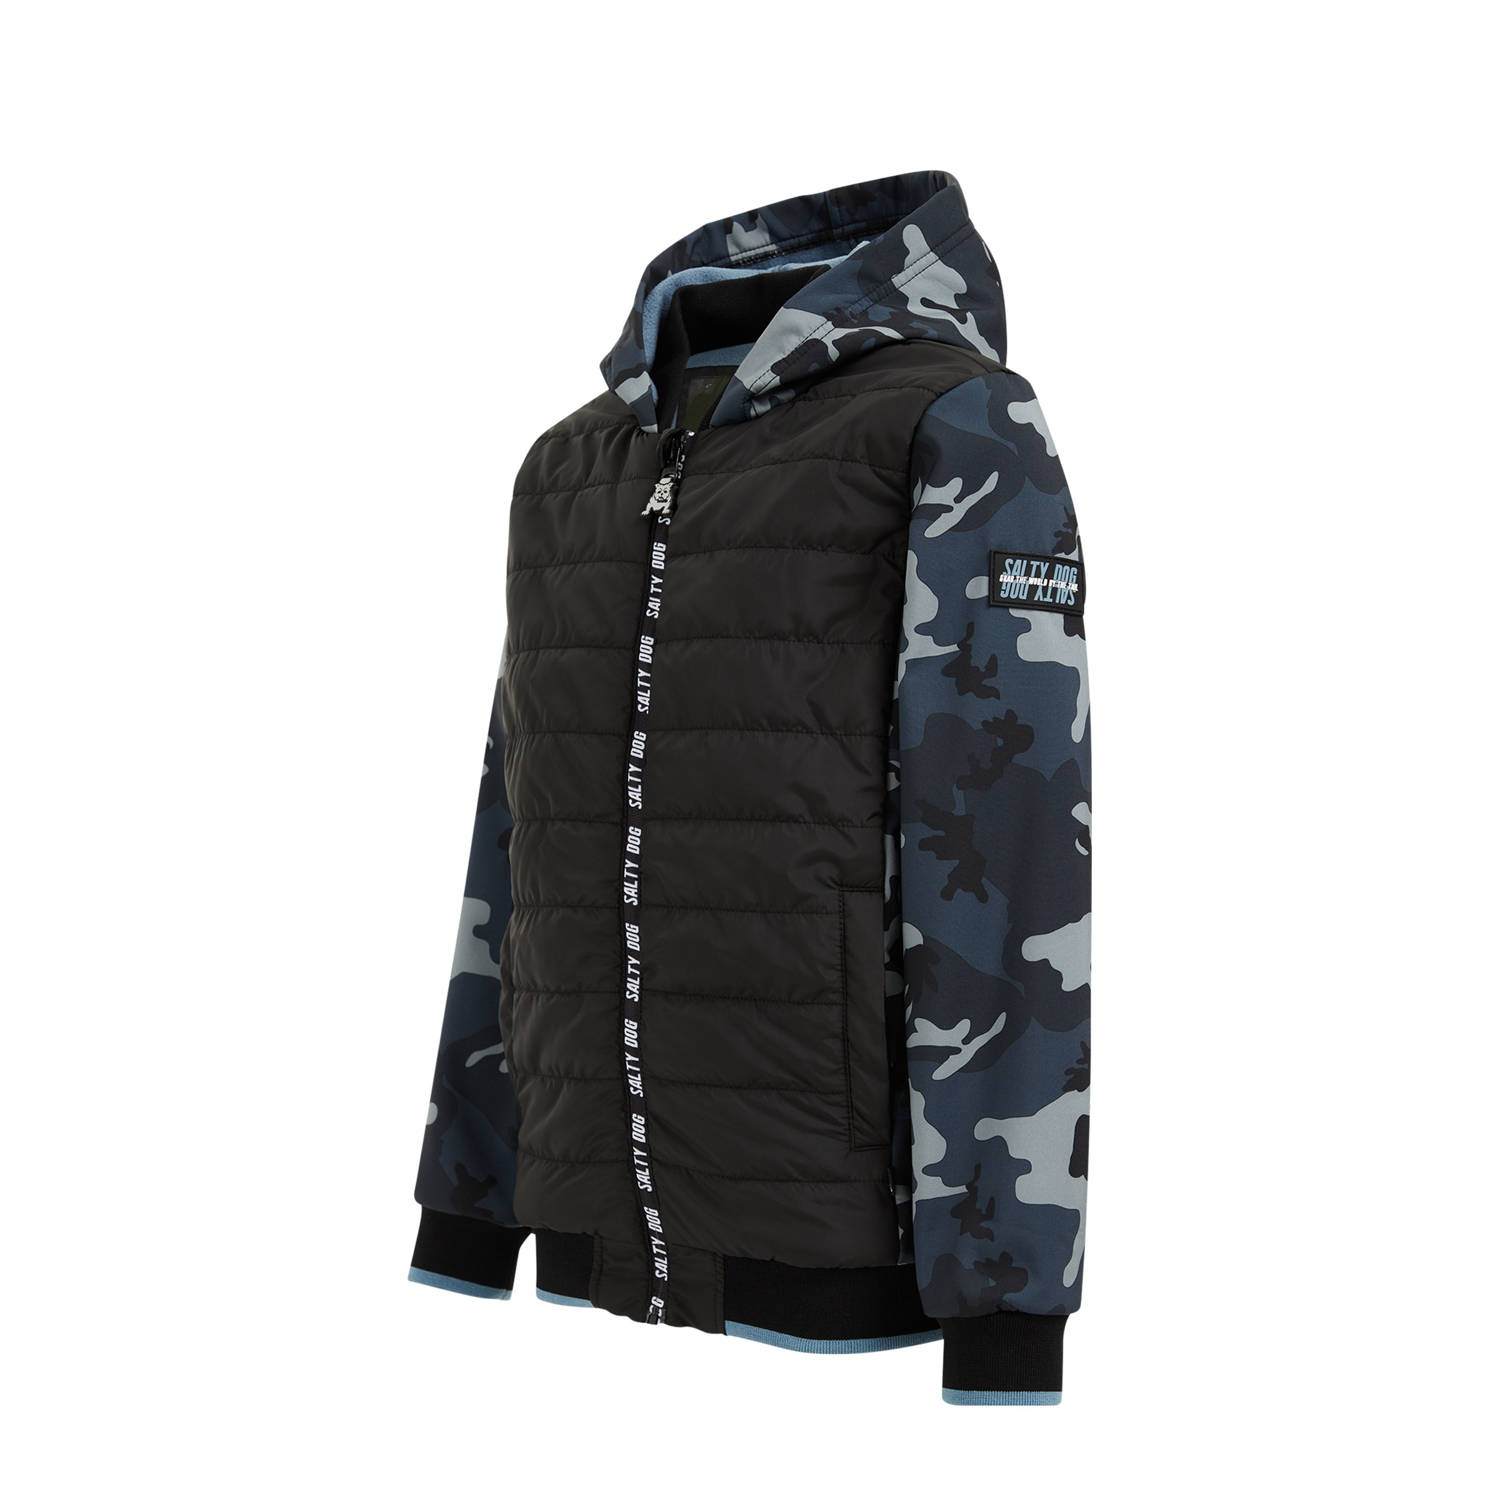 WE Fashion softshell jas met camouflageprint zwart grijs blauw